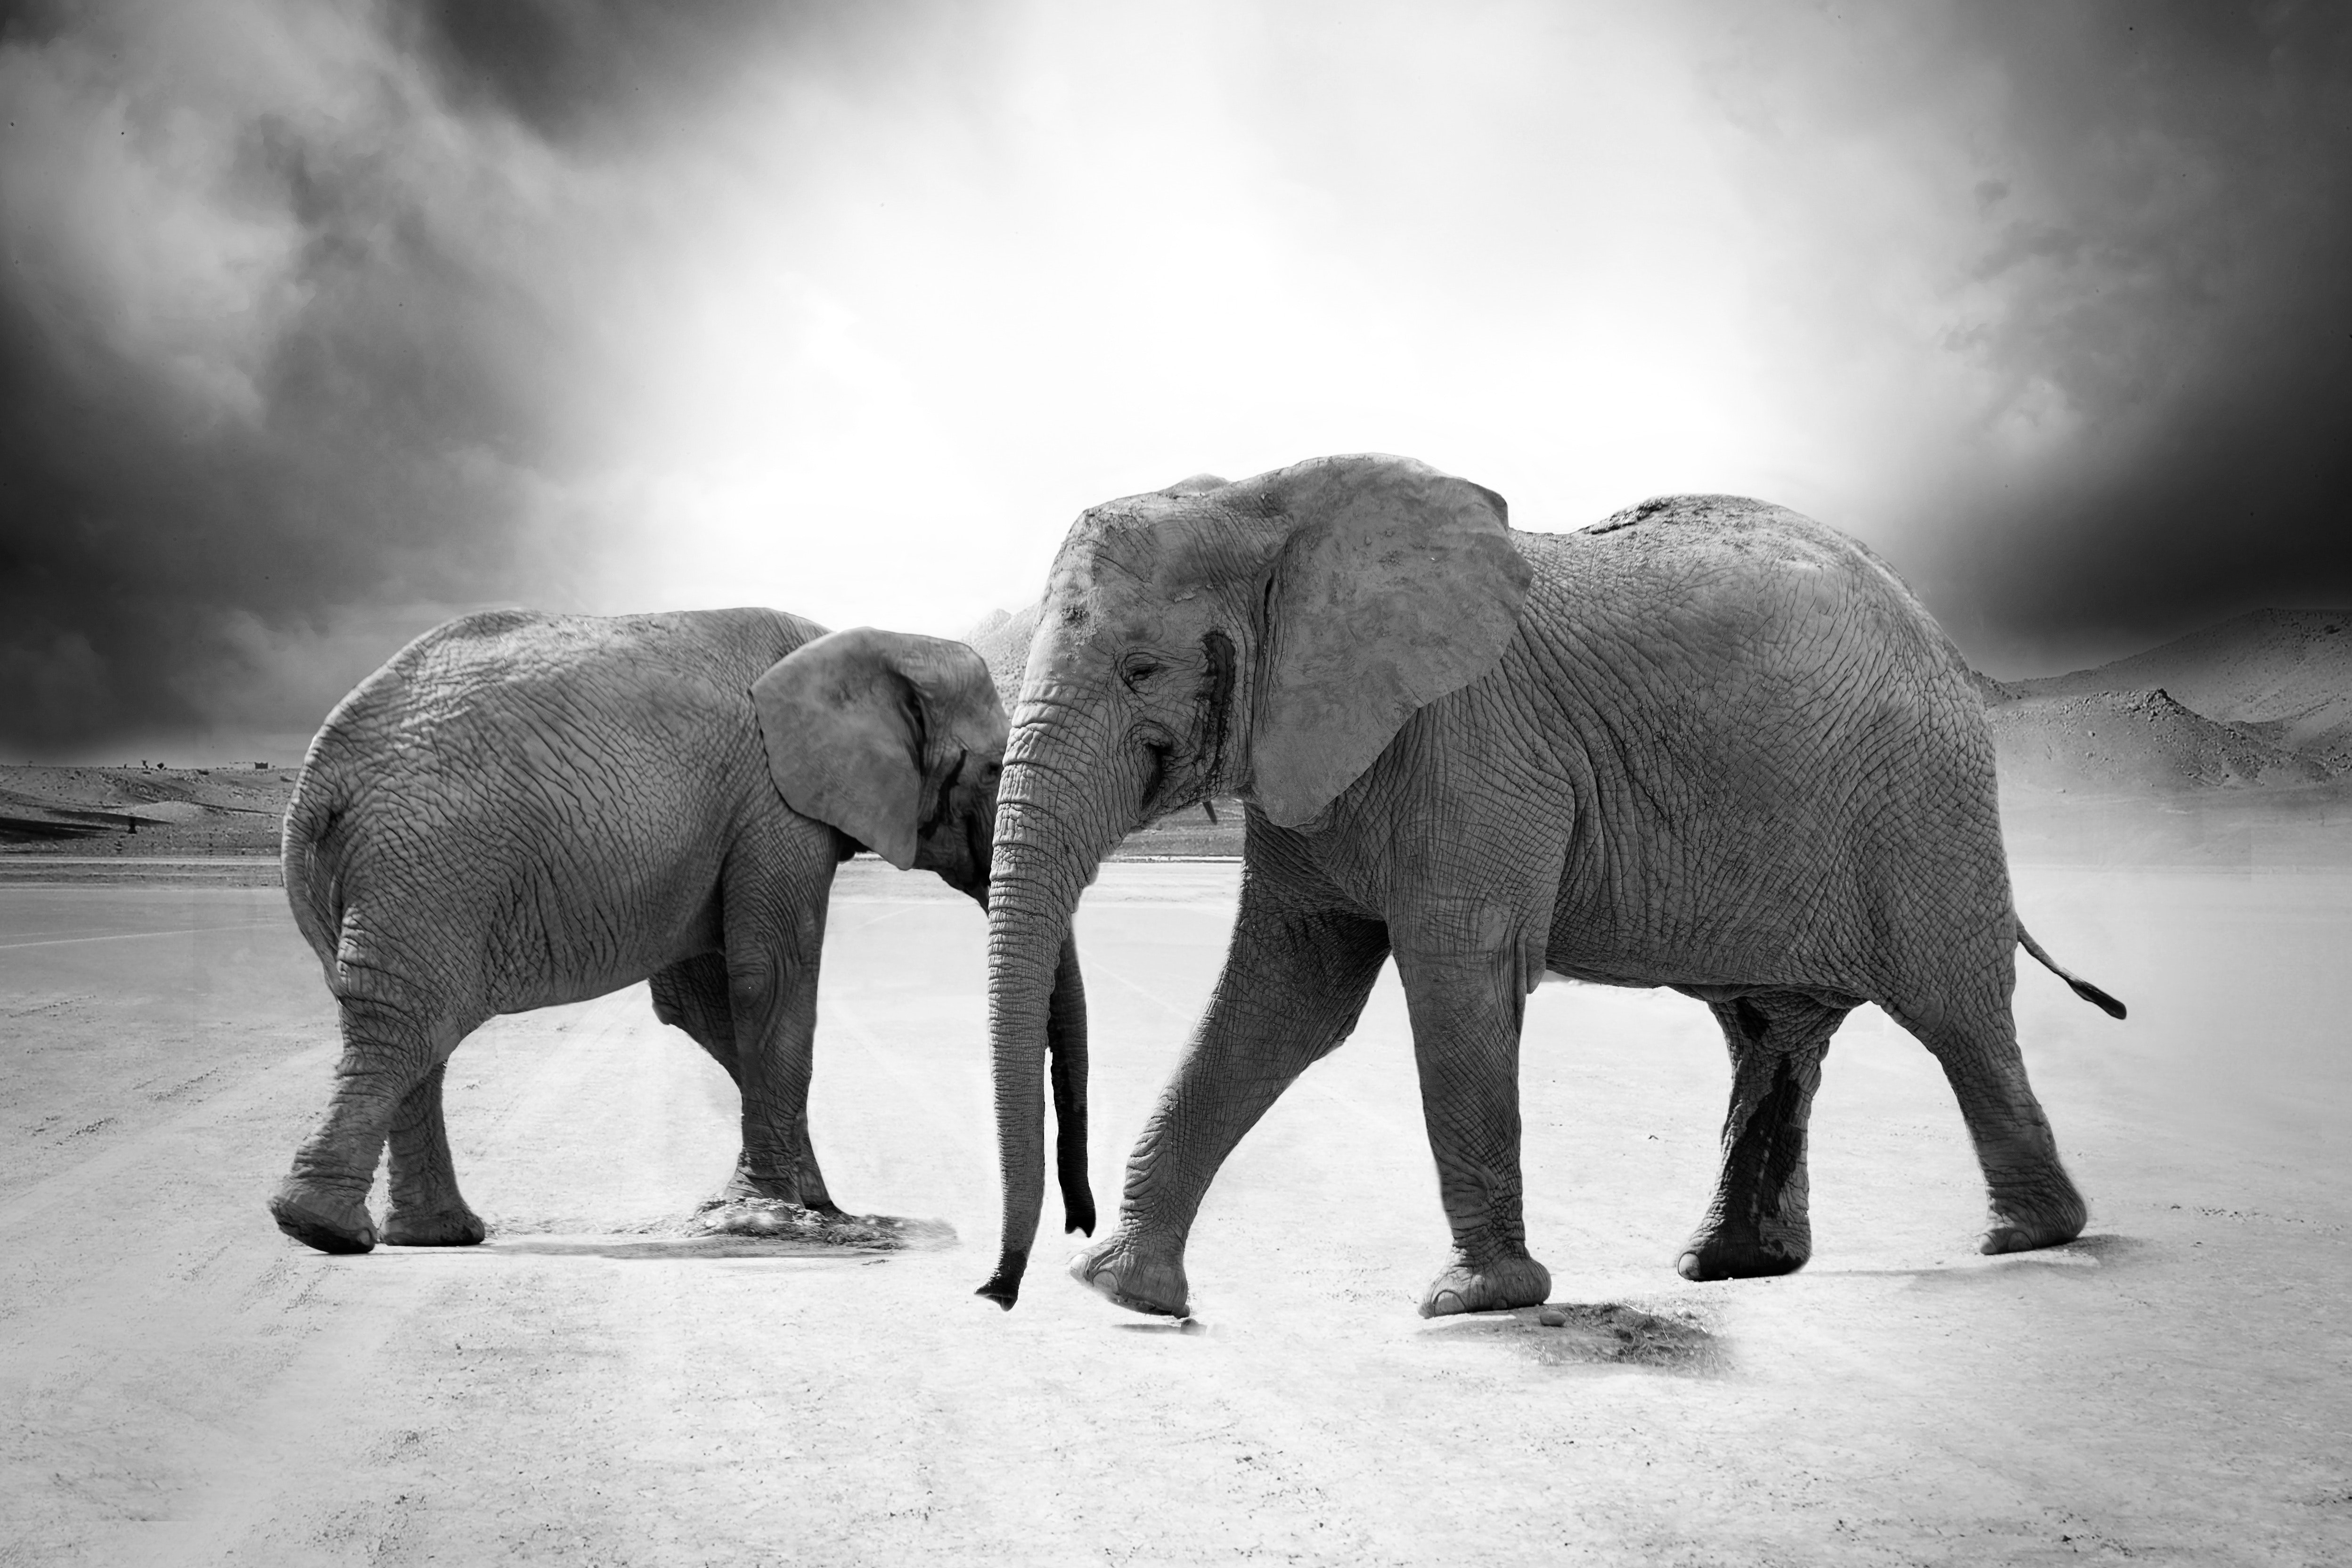 Grayscale photo of 2 elephants